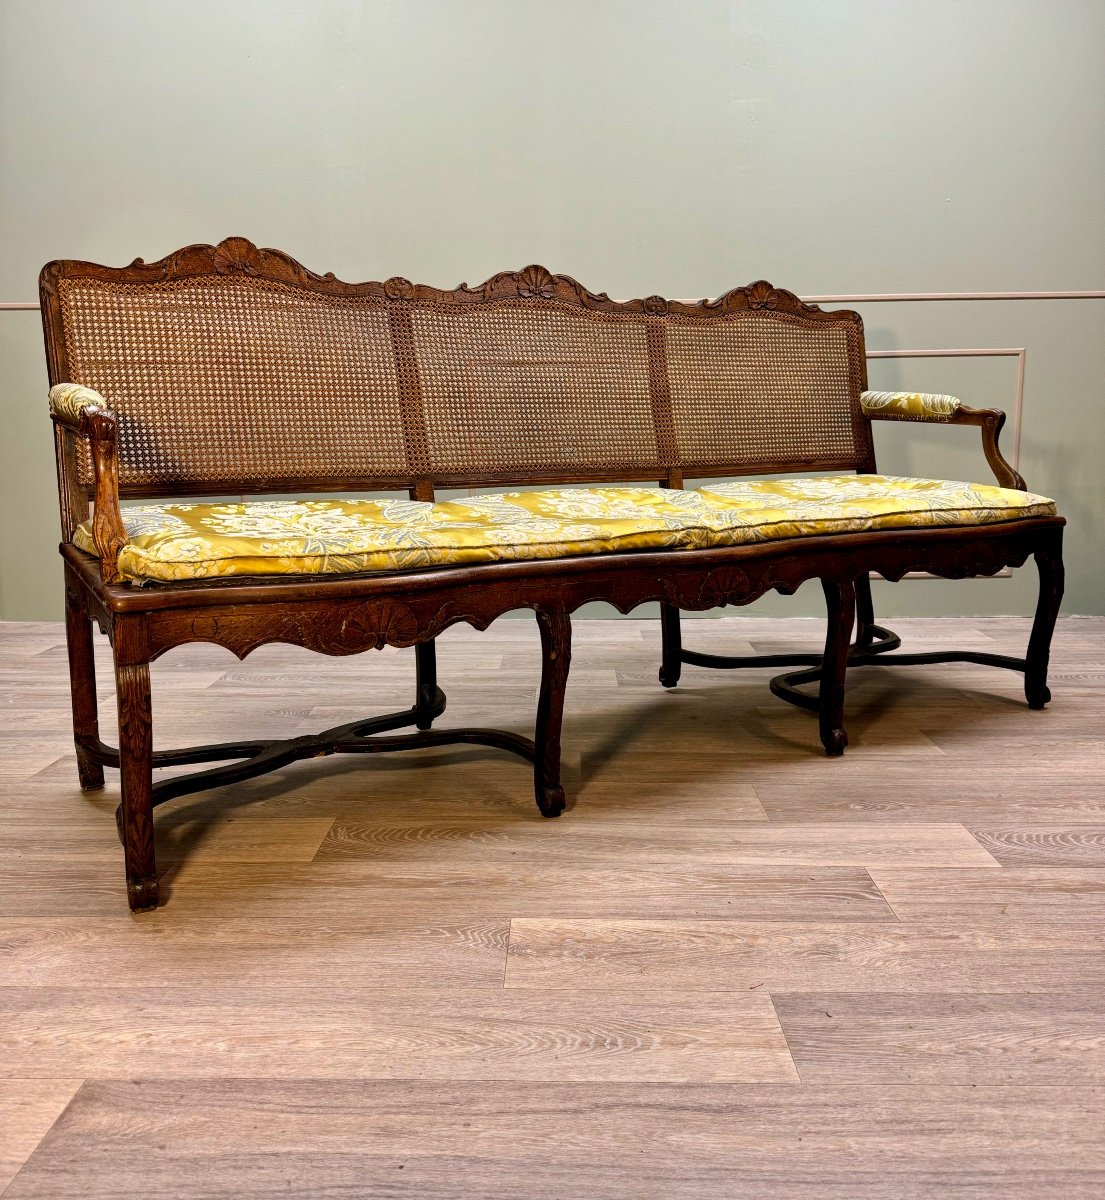 Bench Sofa In Cane Walnut From Regency Period XVIII Eme Century -photo-7